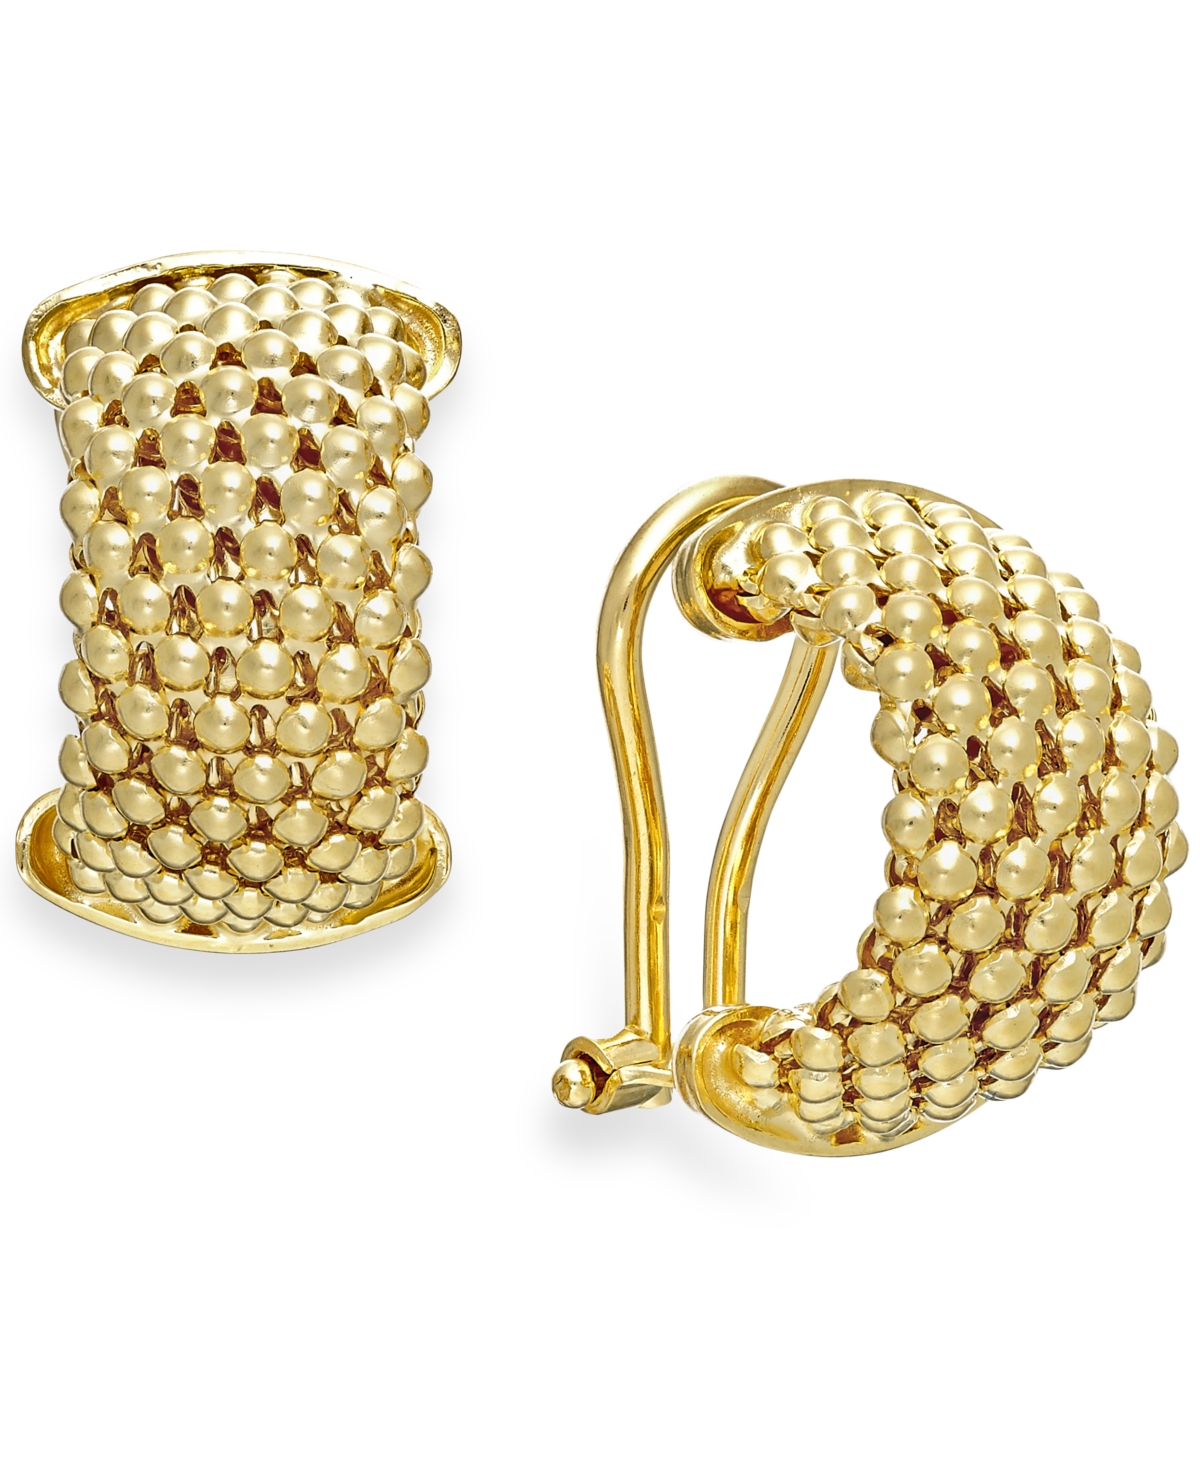 Mesh Hoop Earrings in 14k Gold Vermeil over Sterling Silver - Gold